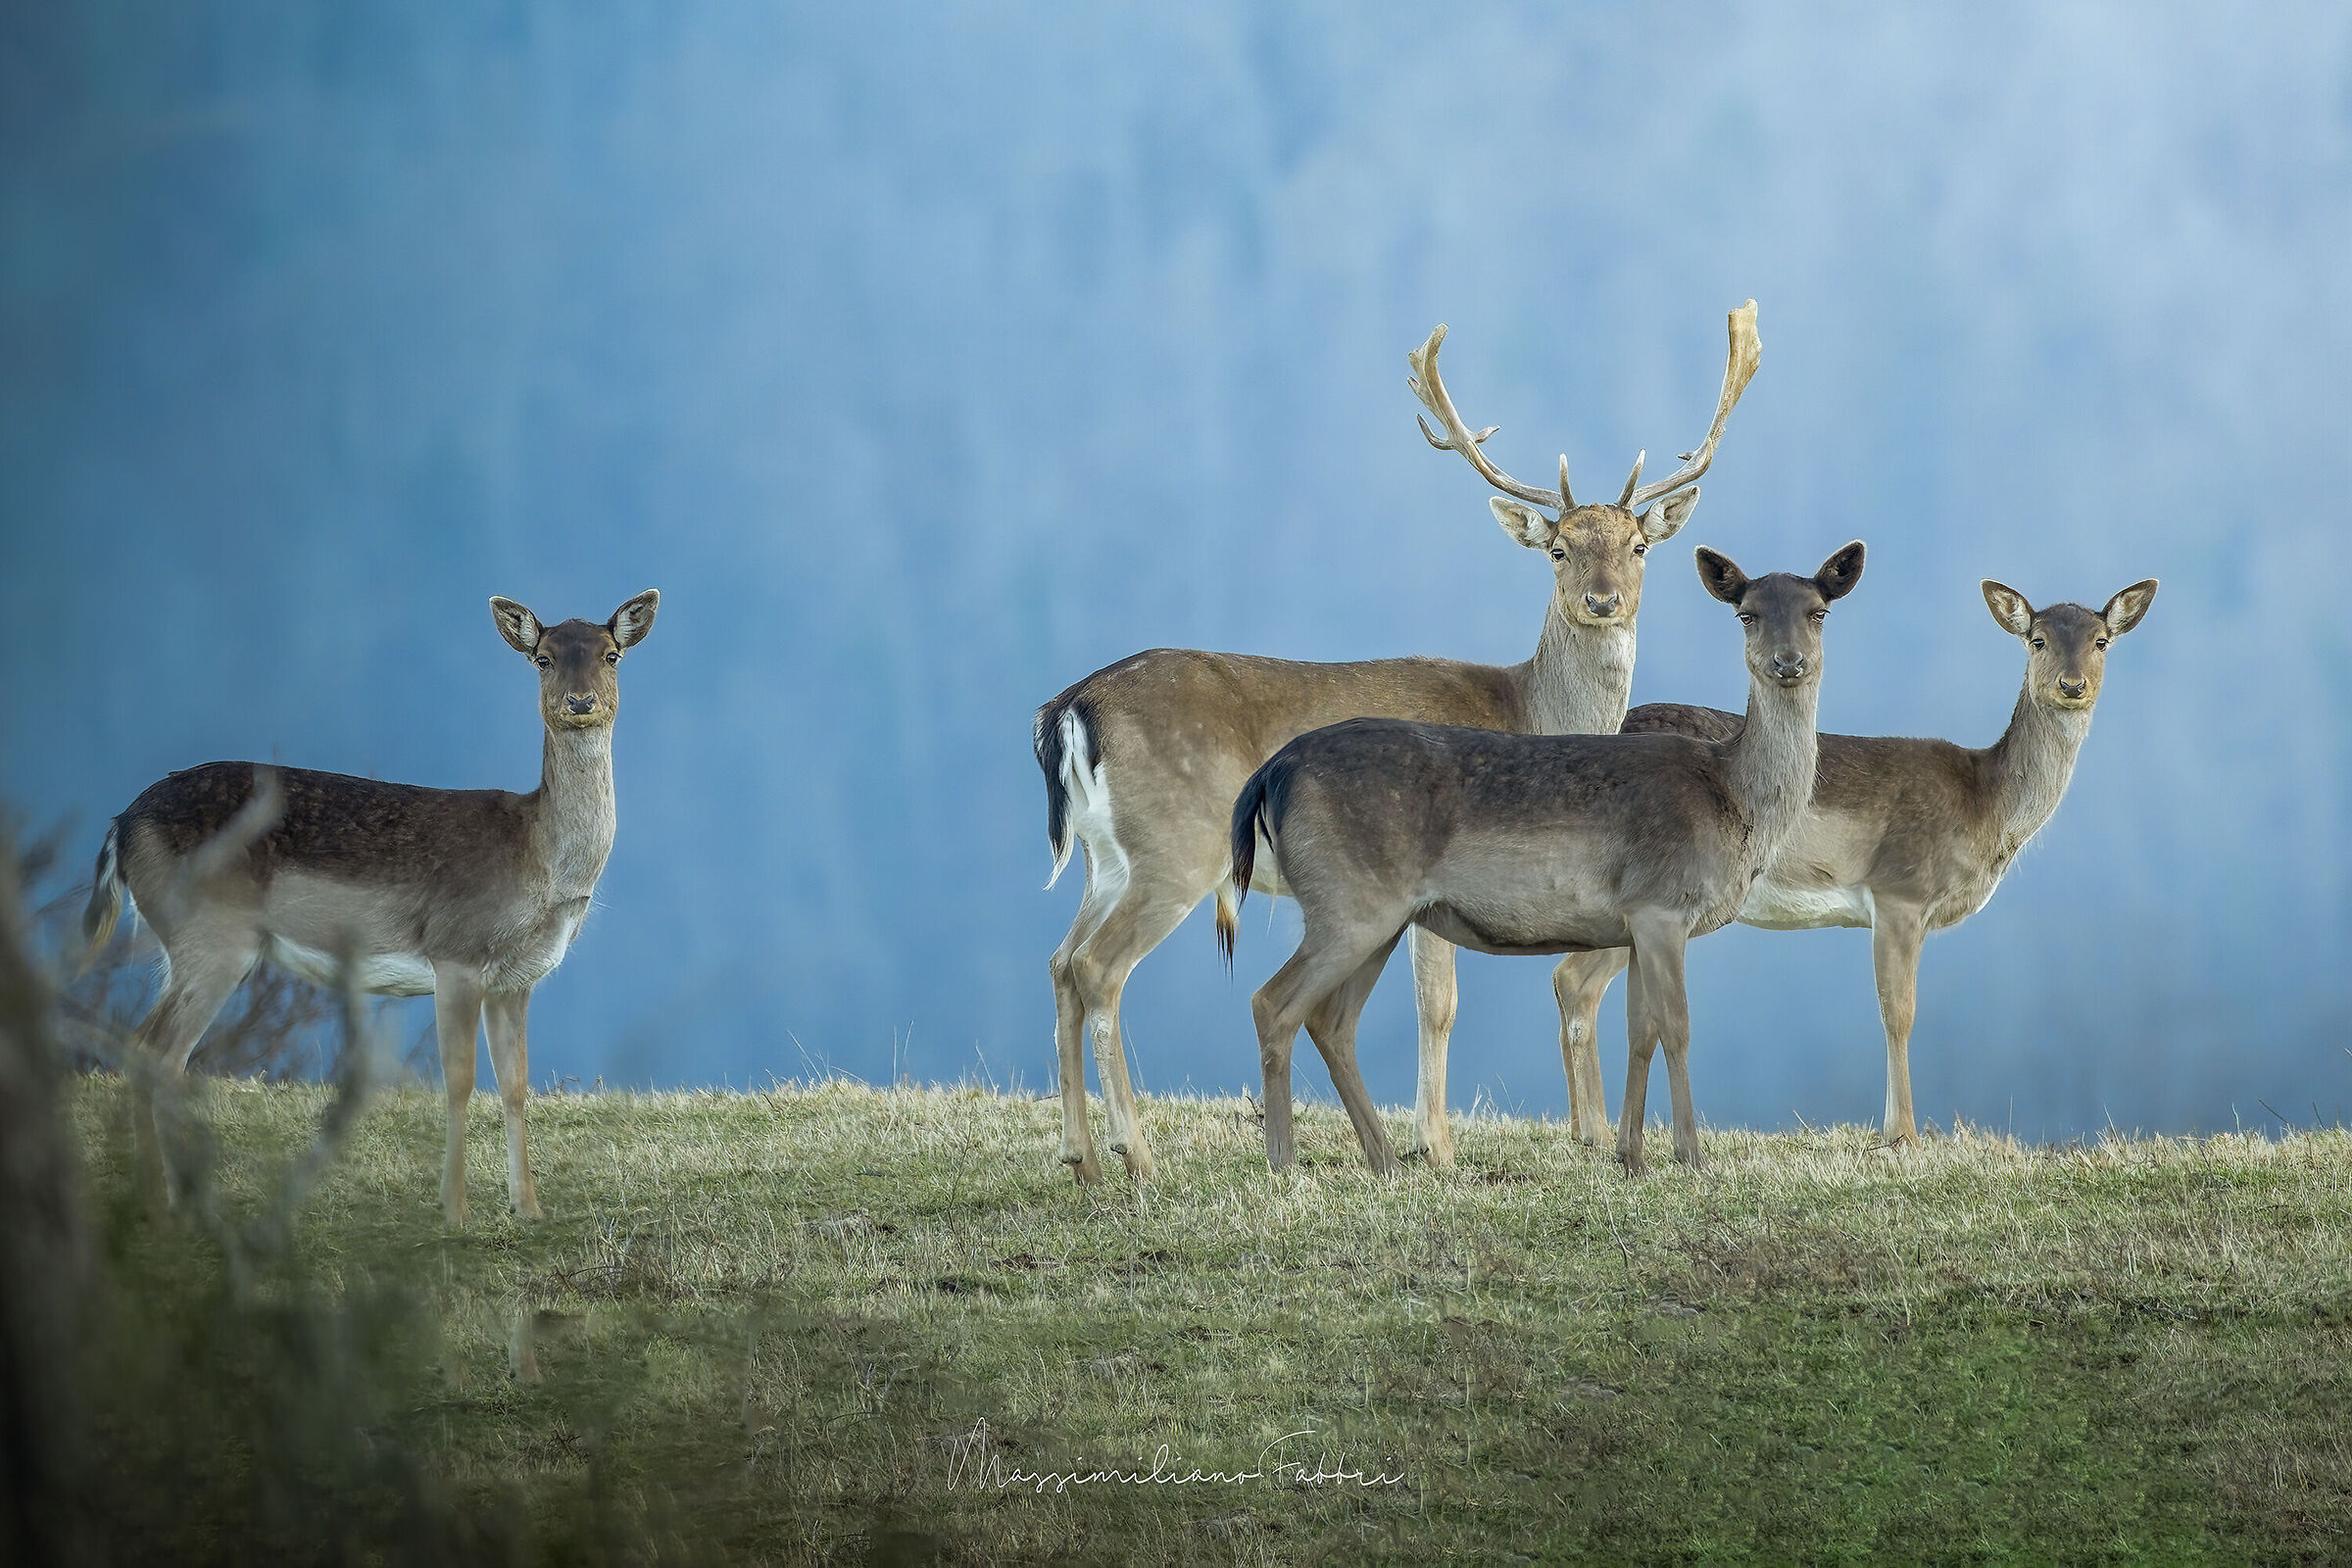 Deer friends...